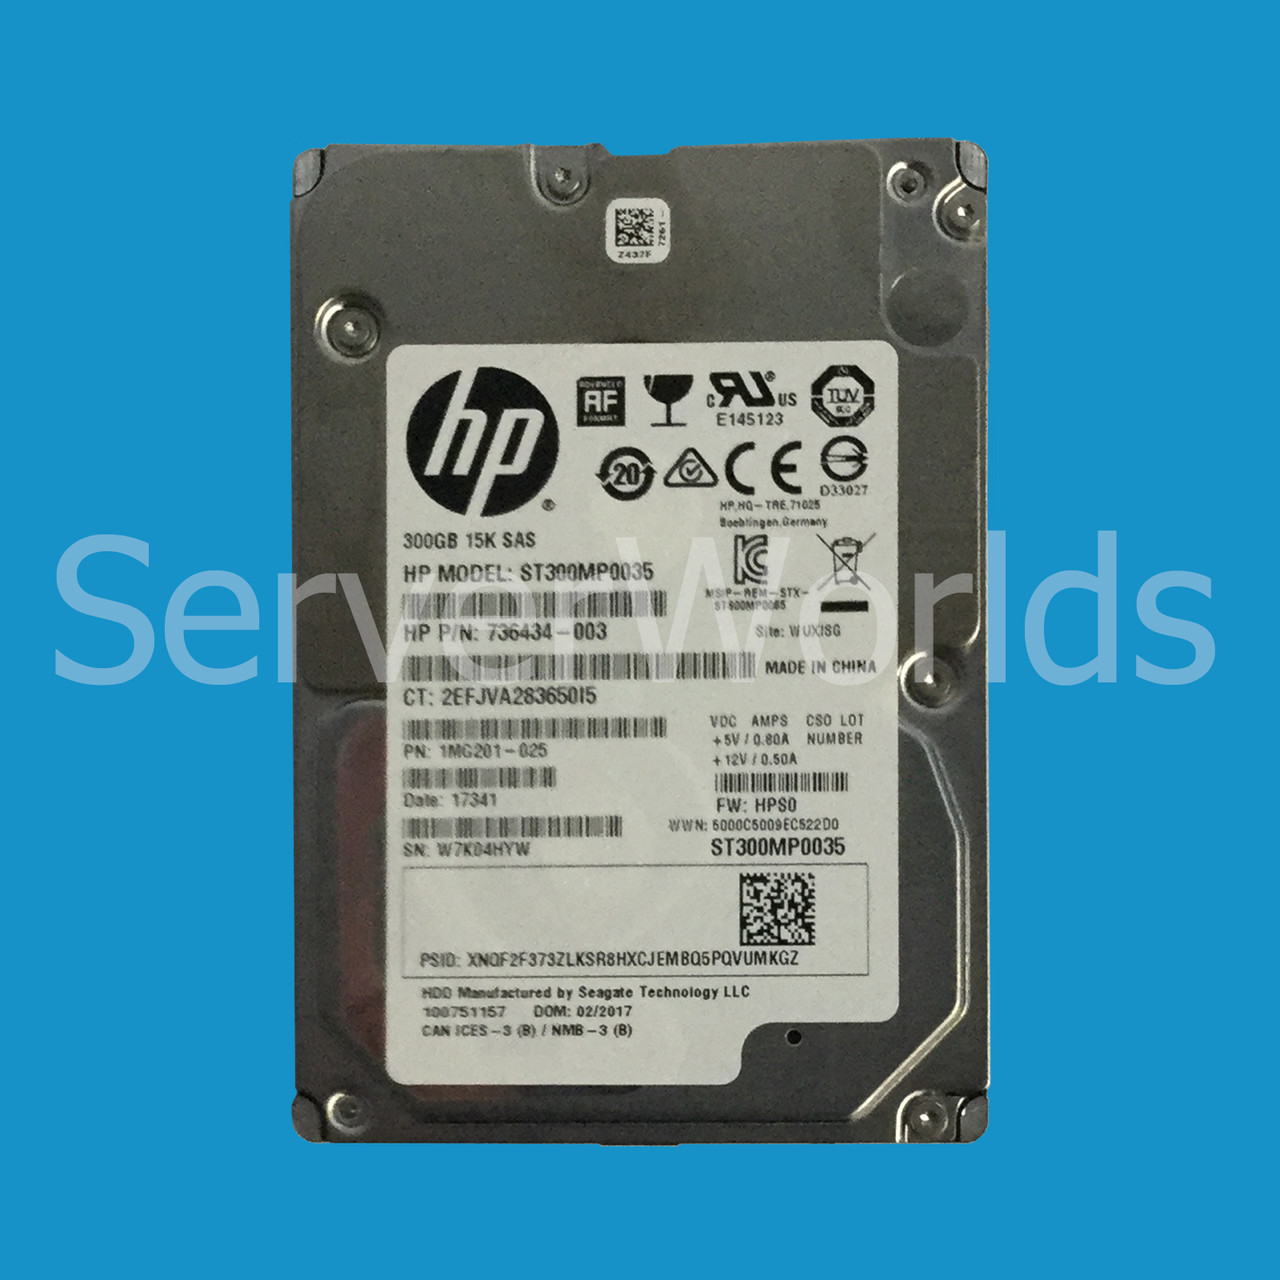 HPe 736434-003 300GB SAS 15K 6G 2.5" SFF NHP Hard Drive ST300MP0035